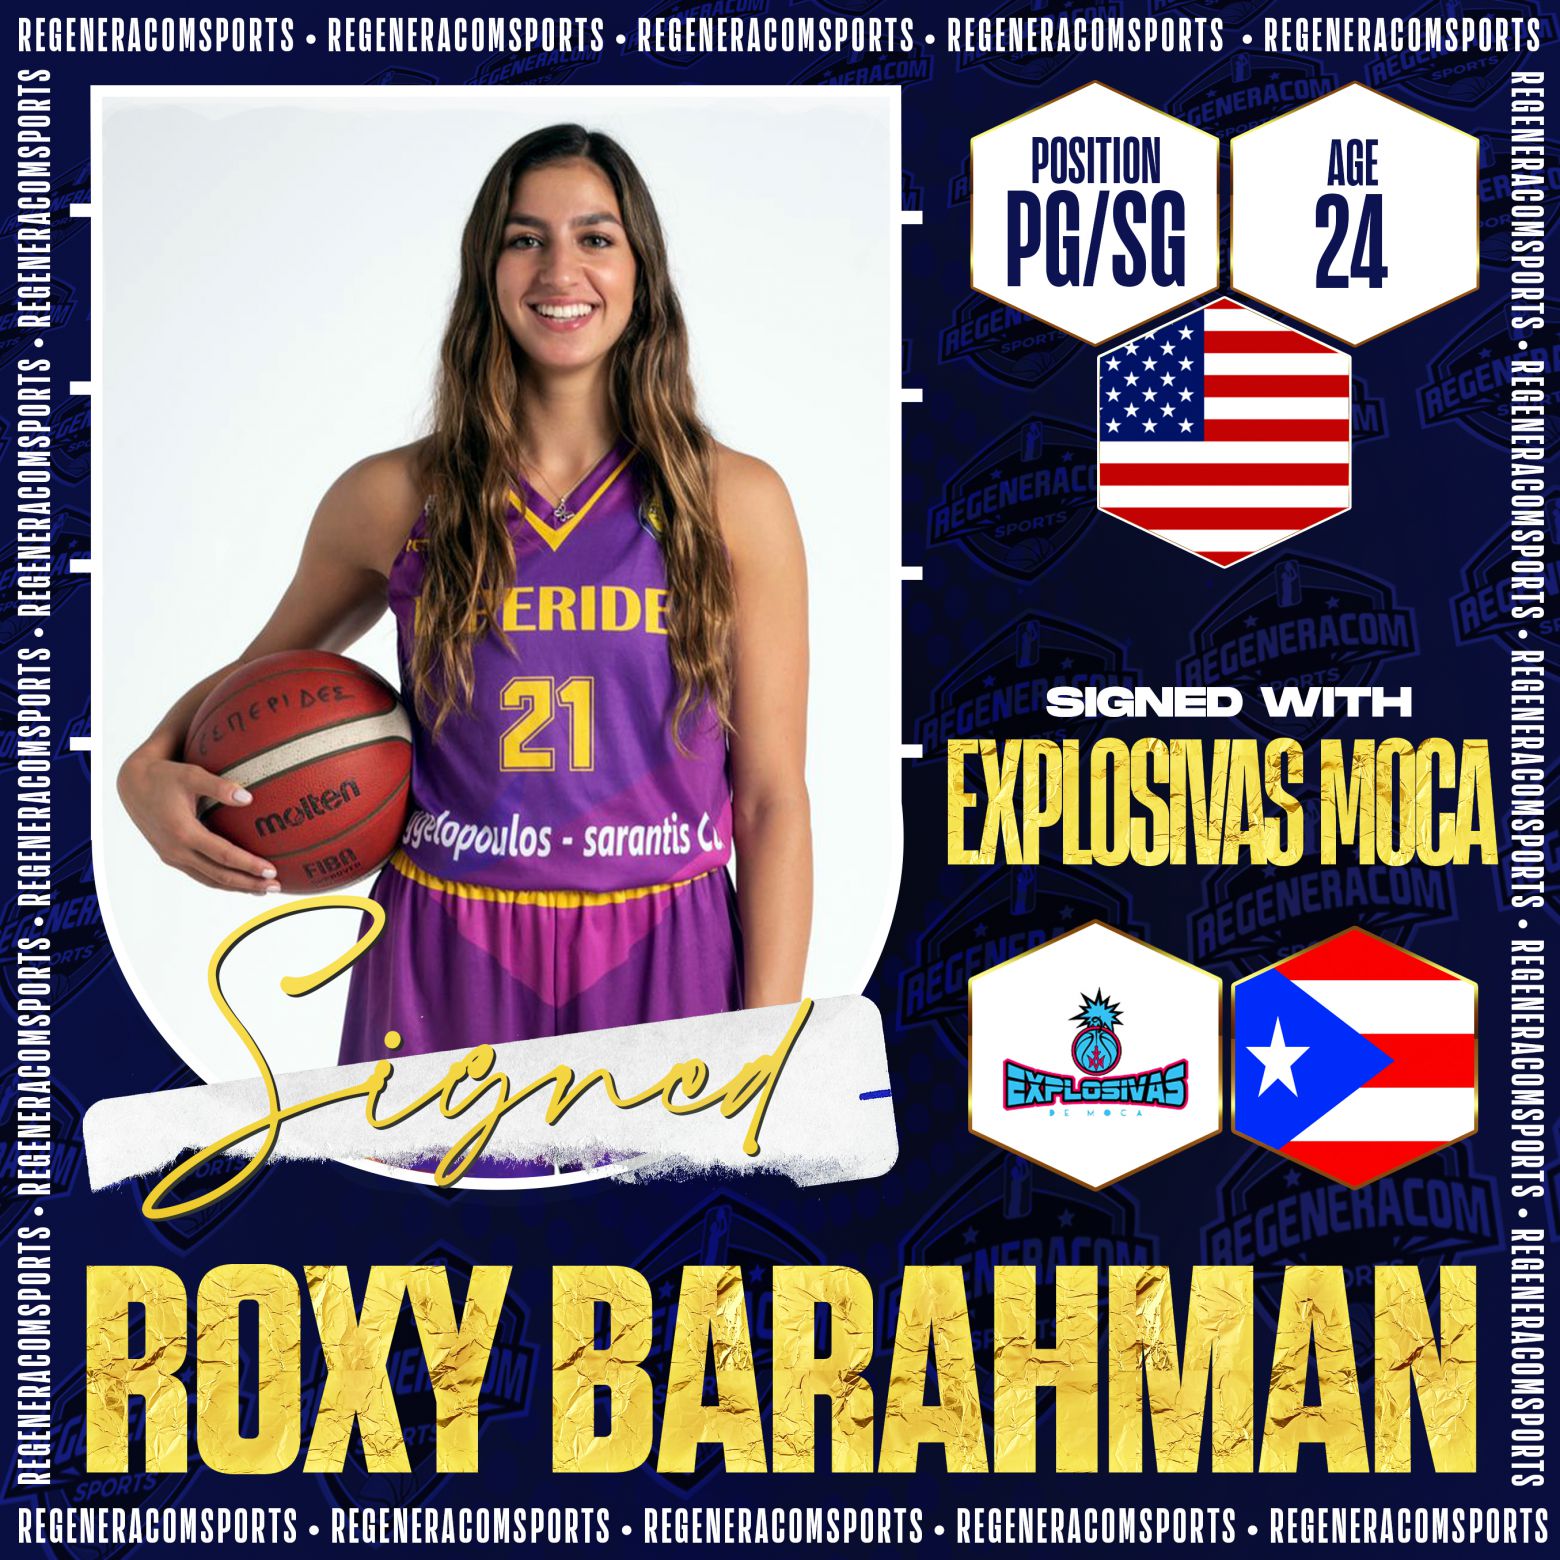 ROXY BARAHMAN has signed in Puerto Rico with Explosivas de Moca